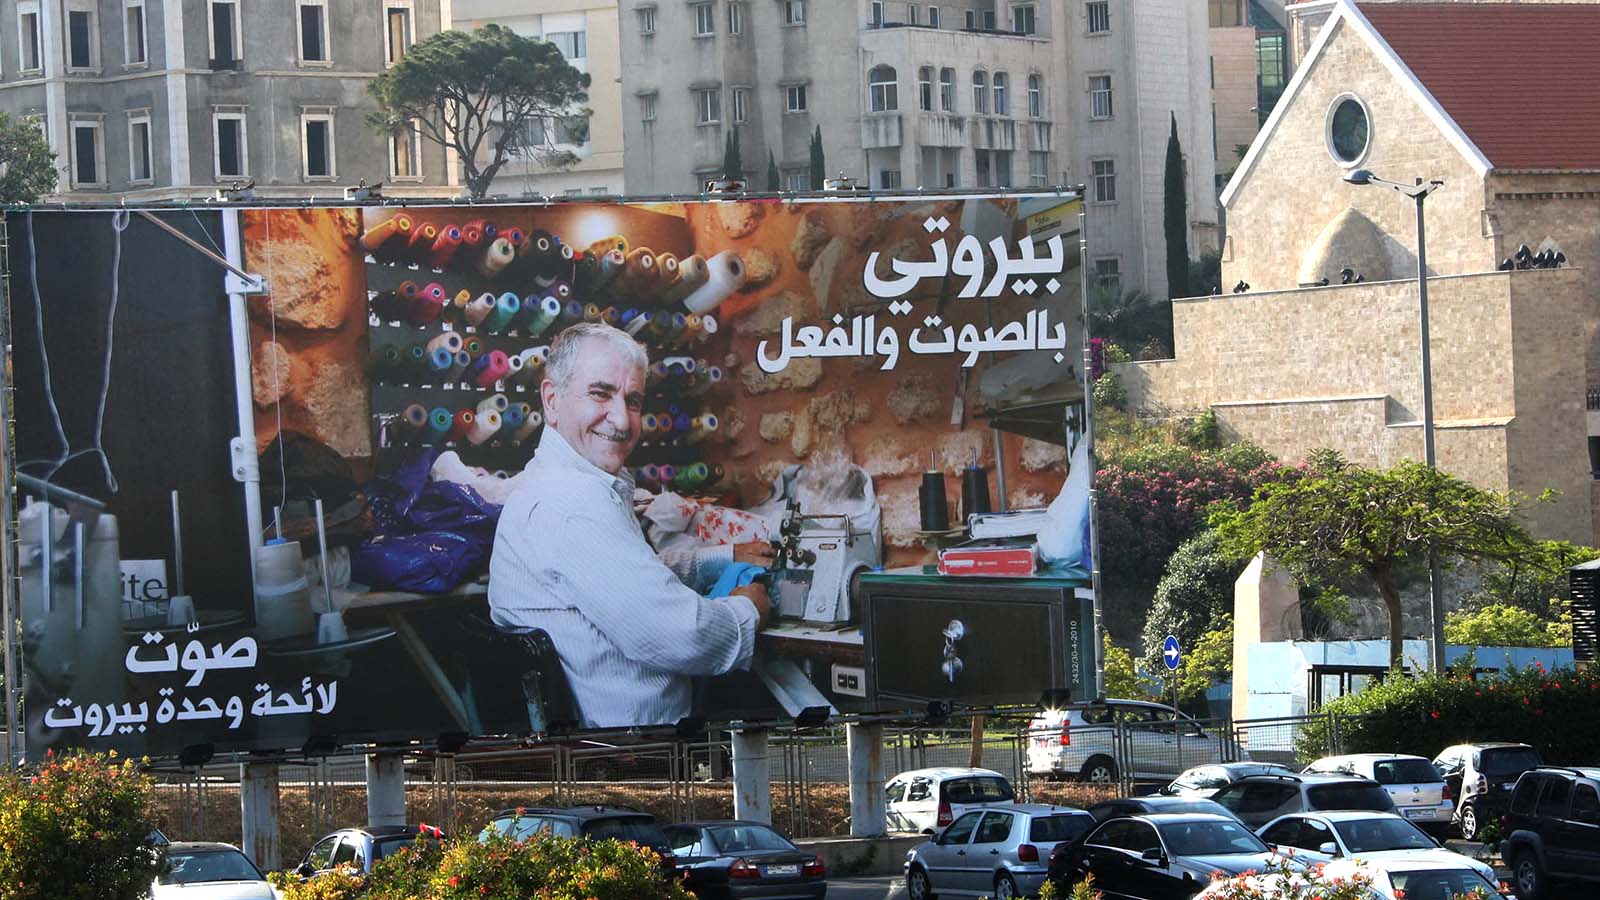 لائحة "بيروت مدينتي": هذه المدينة يمكنها أن تكون أفضل